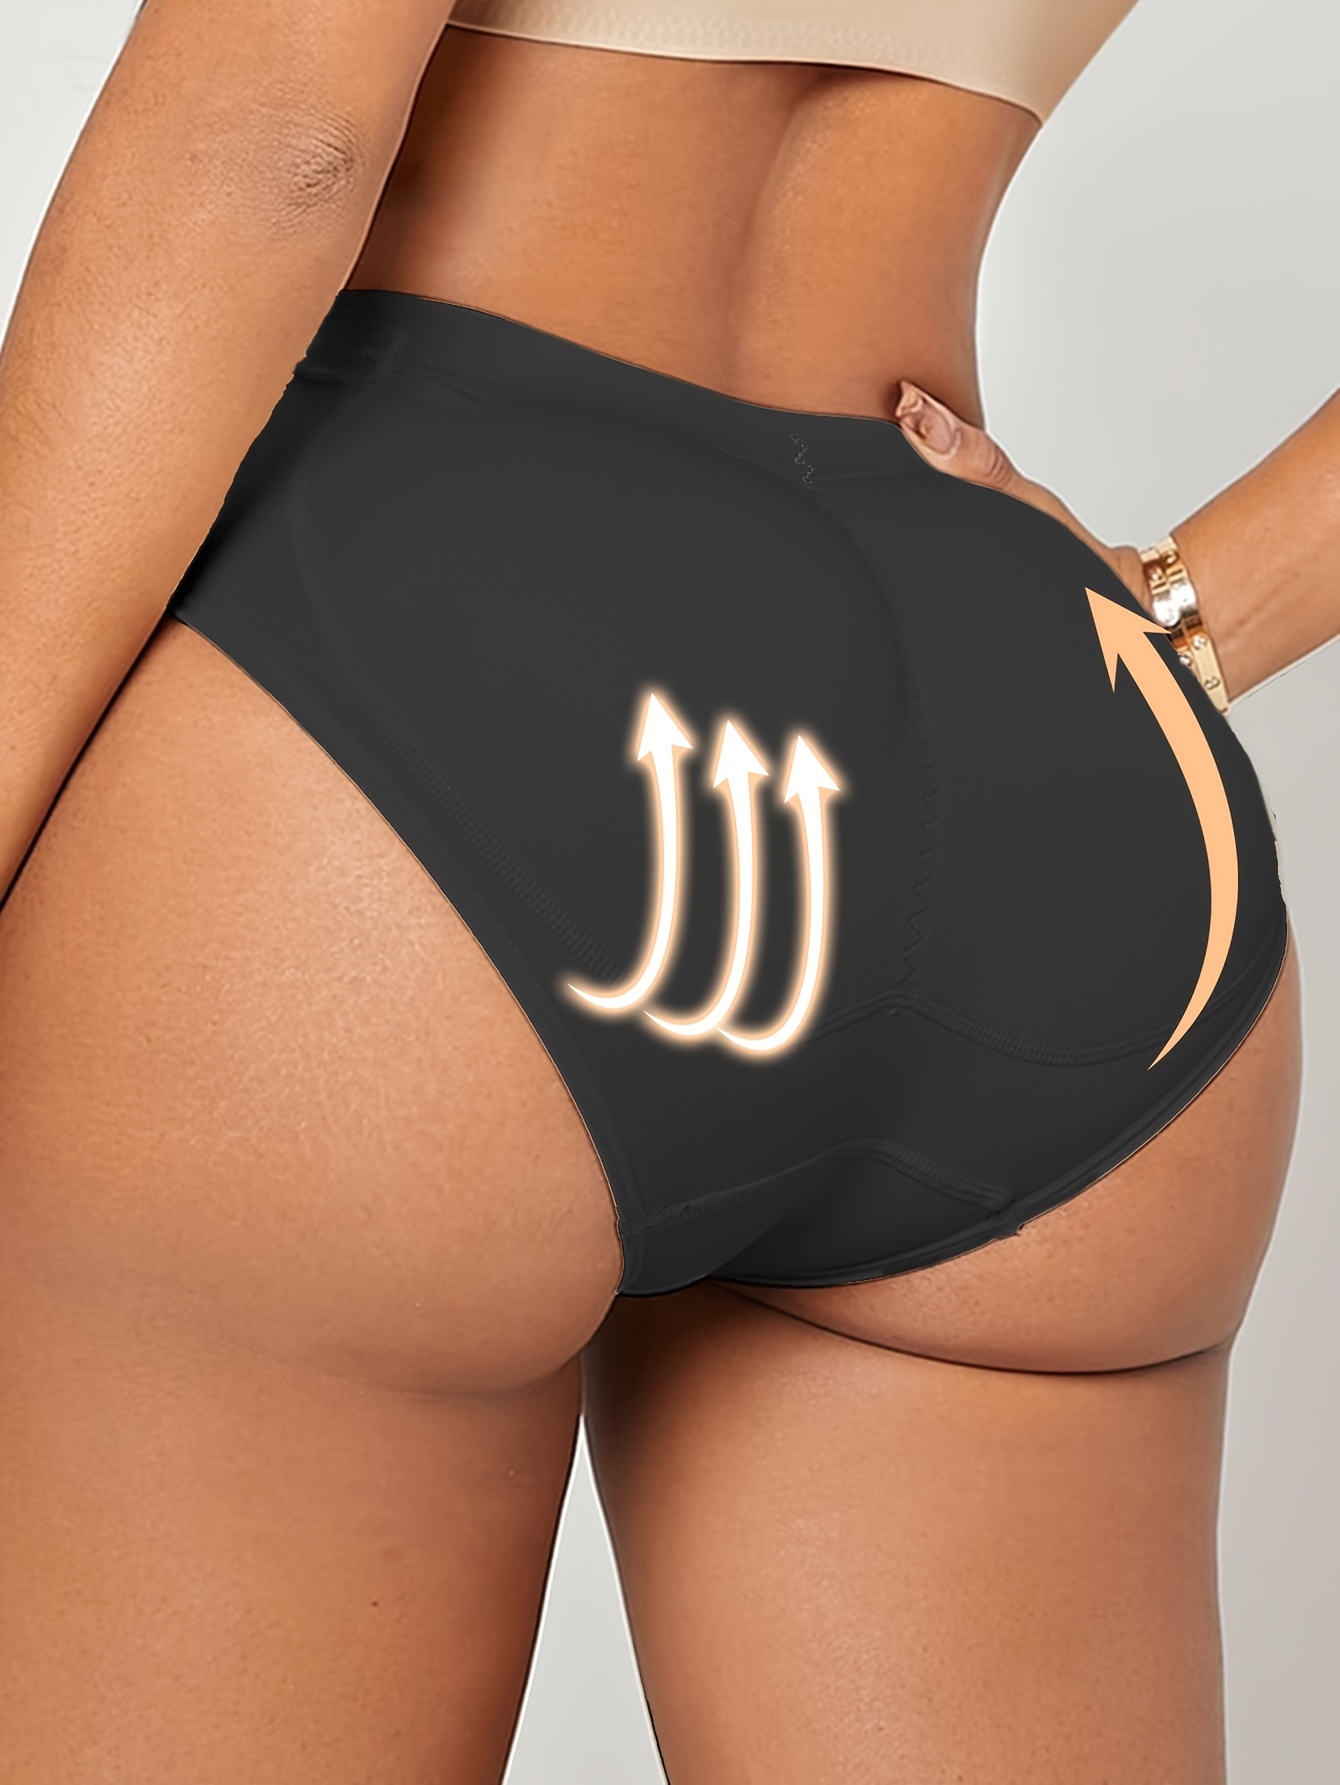 Womens Butt Lifting Padded Panties Butt Lift Shaperwear Booty